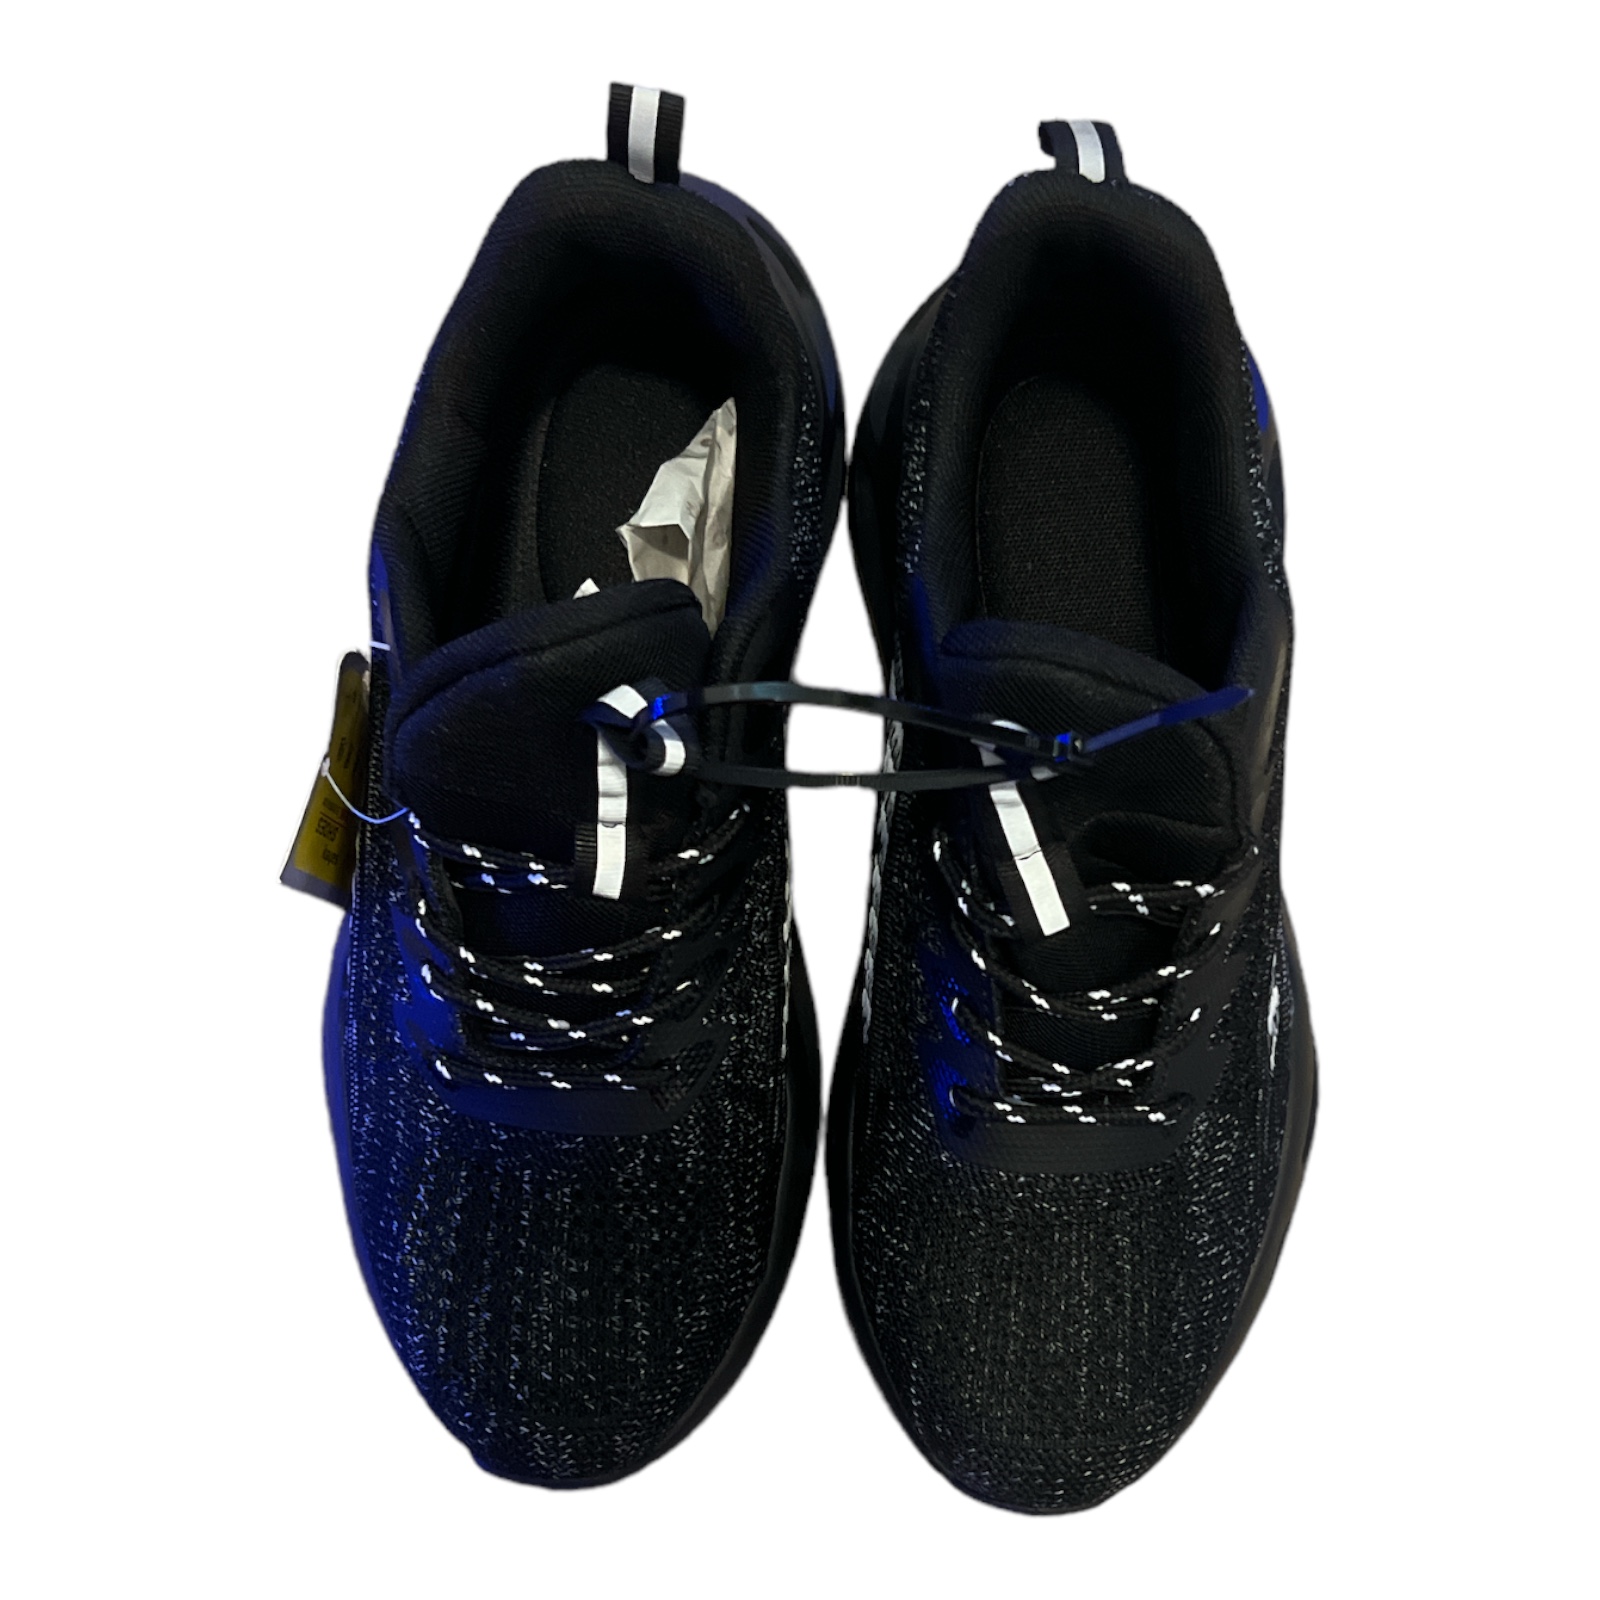 “Black Safety Work Shoes” FOR MEN